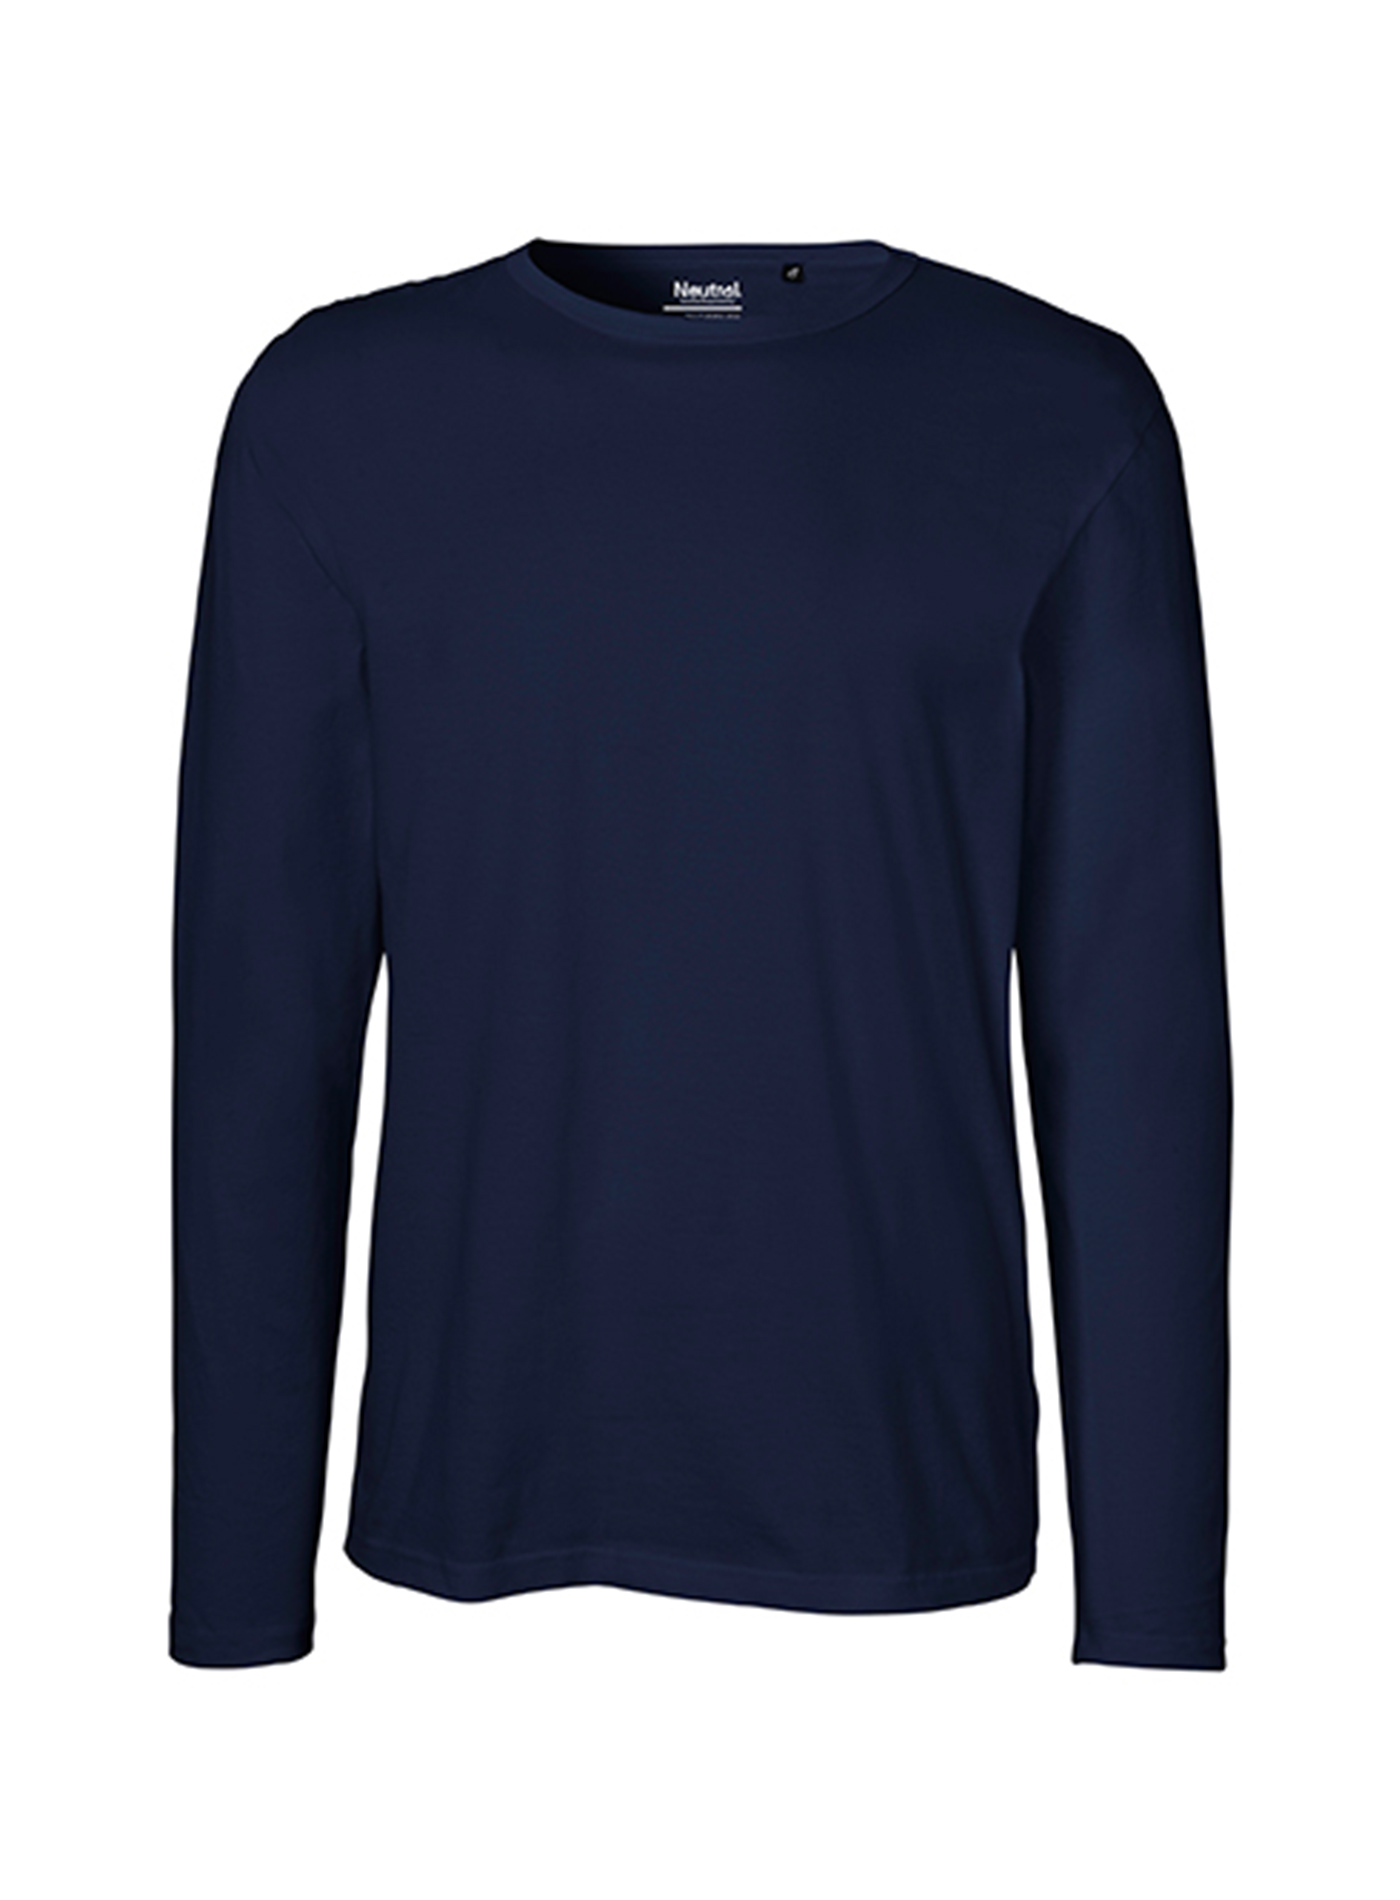 Pánské tričko s dlouhým rukávem Neutral - Námořní modrá M